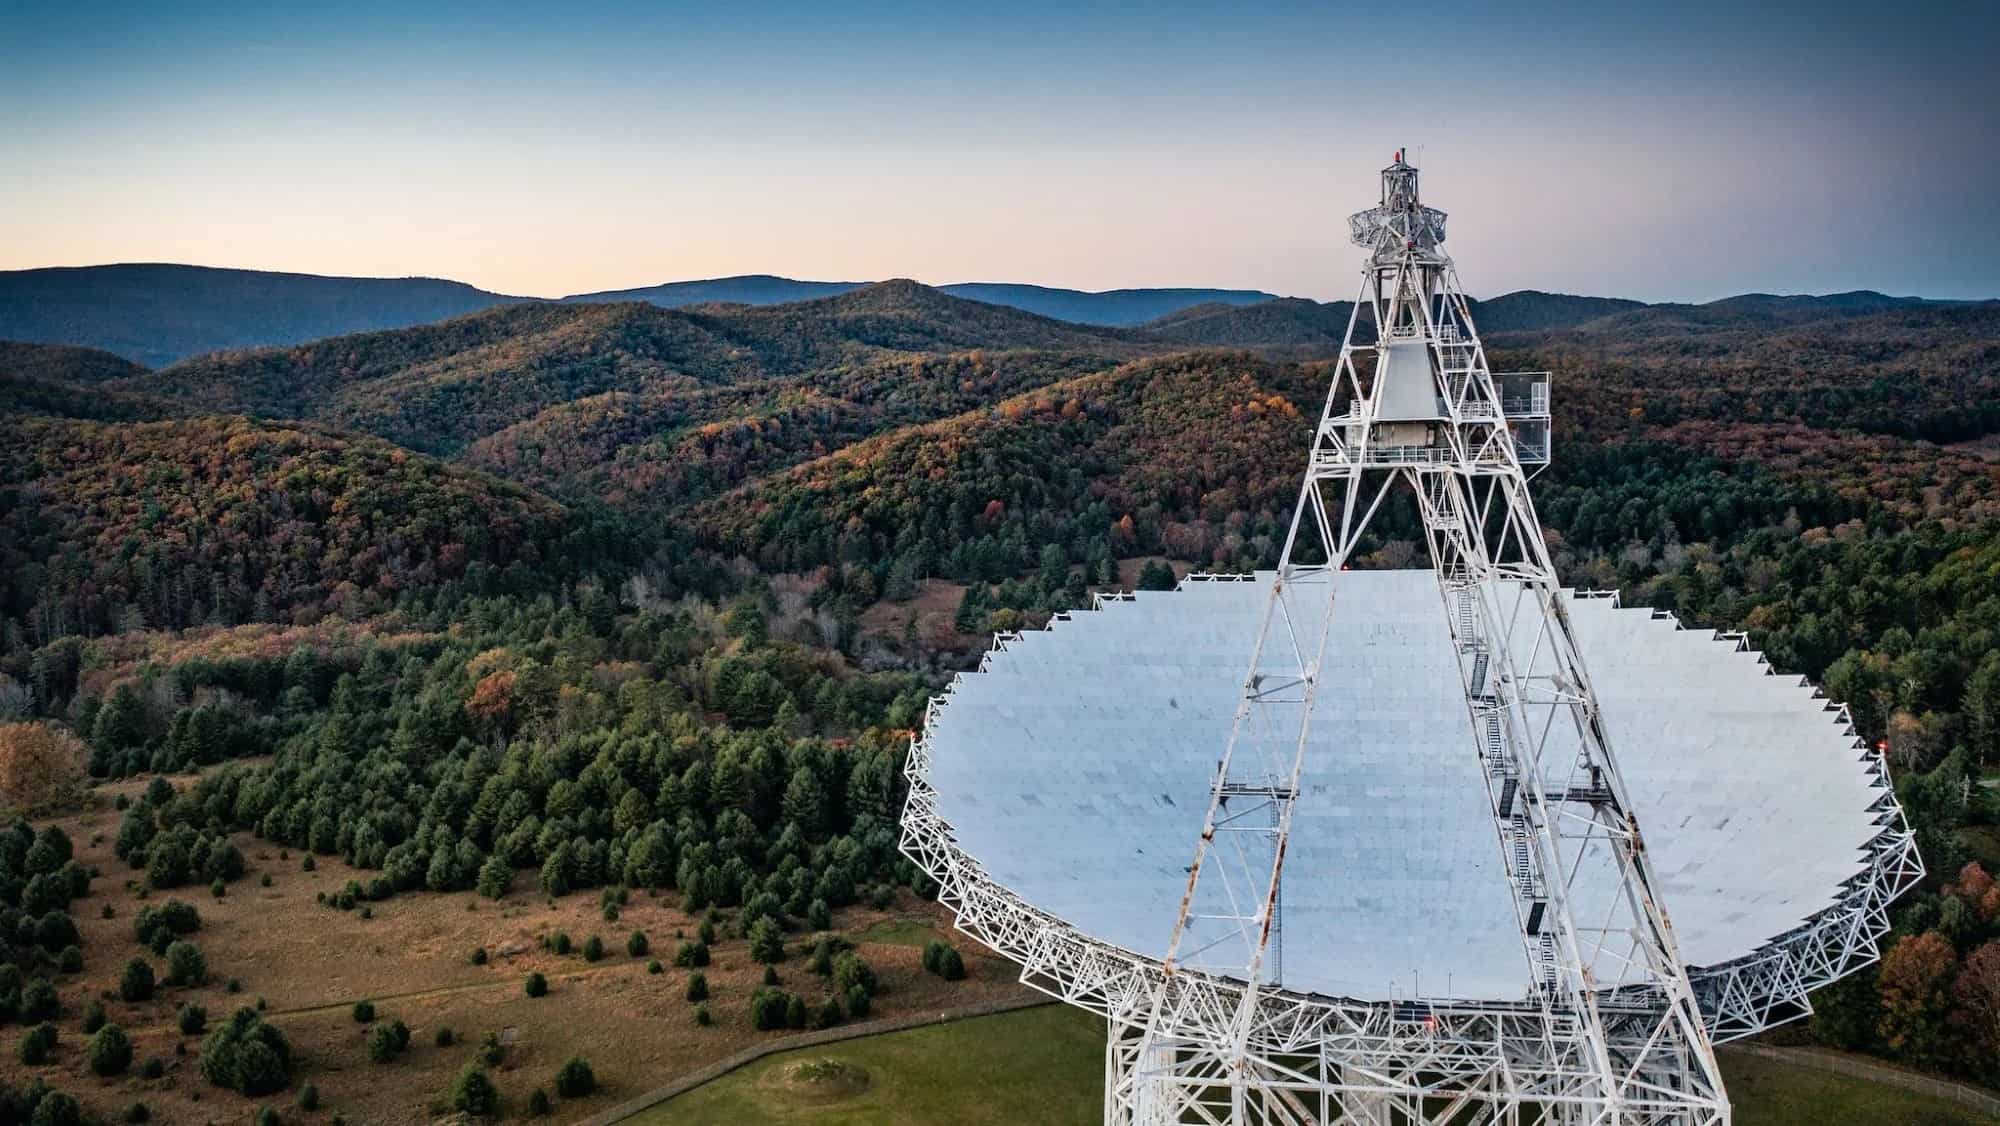 كان تلسكوب غرين بانك في ولاية ويست فيرجينيا الأميركية أحد المراصد المستخدمة في التجربة الجديدة. جيه يونغ من مرصد غرين بانك